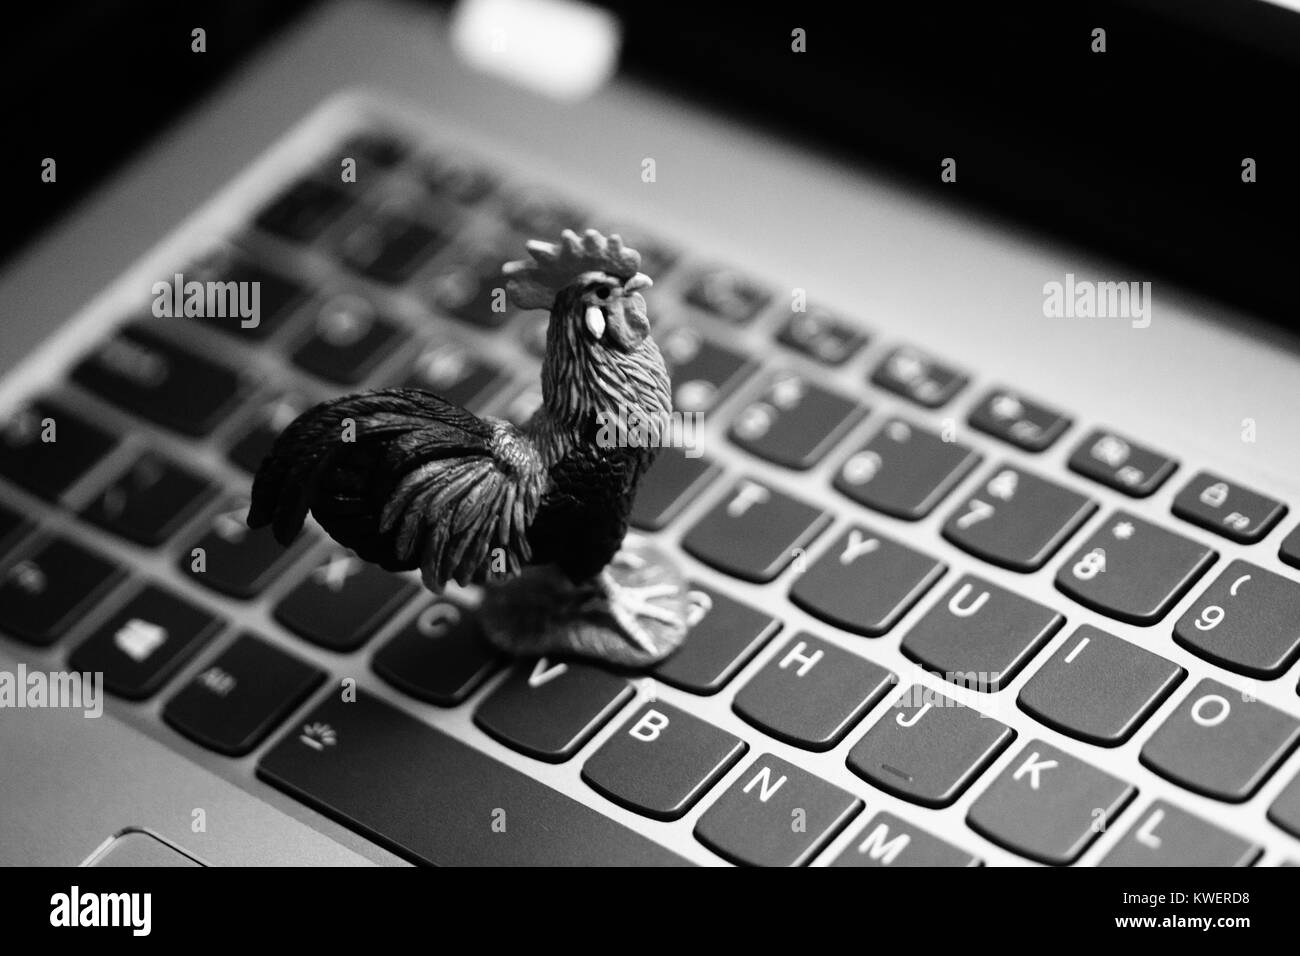 Toy coq sur clavier d'ordinateur portable - animaux domestiques et l'agriculture à l'ère numérique Banque D'Images